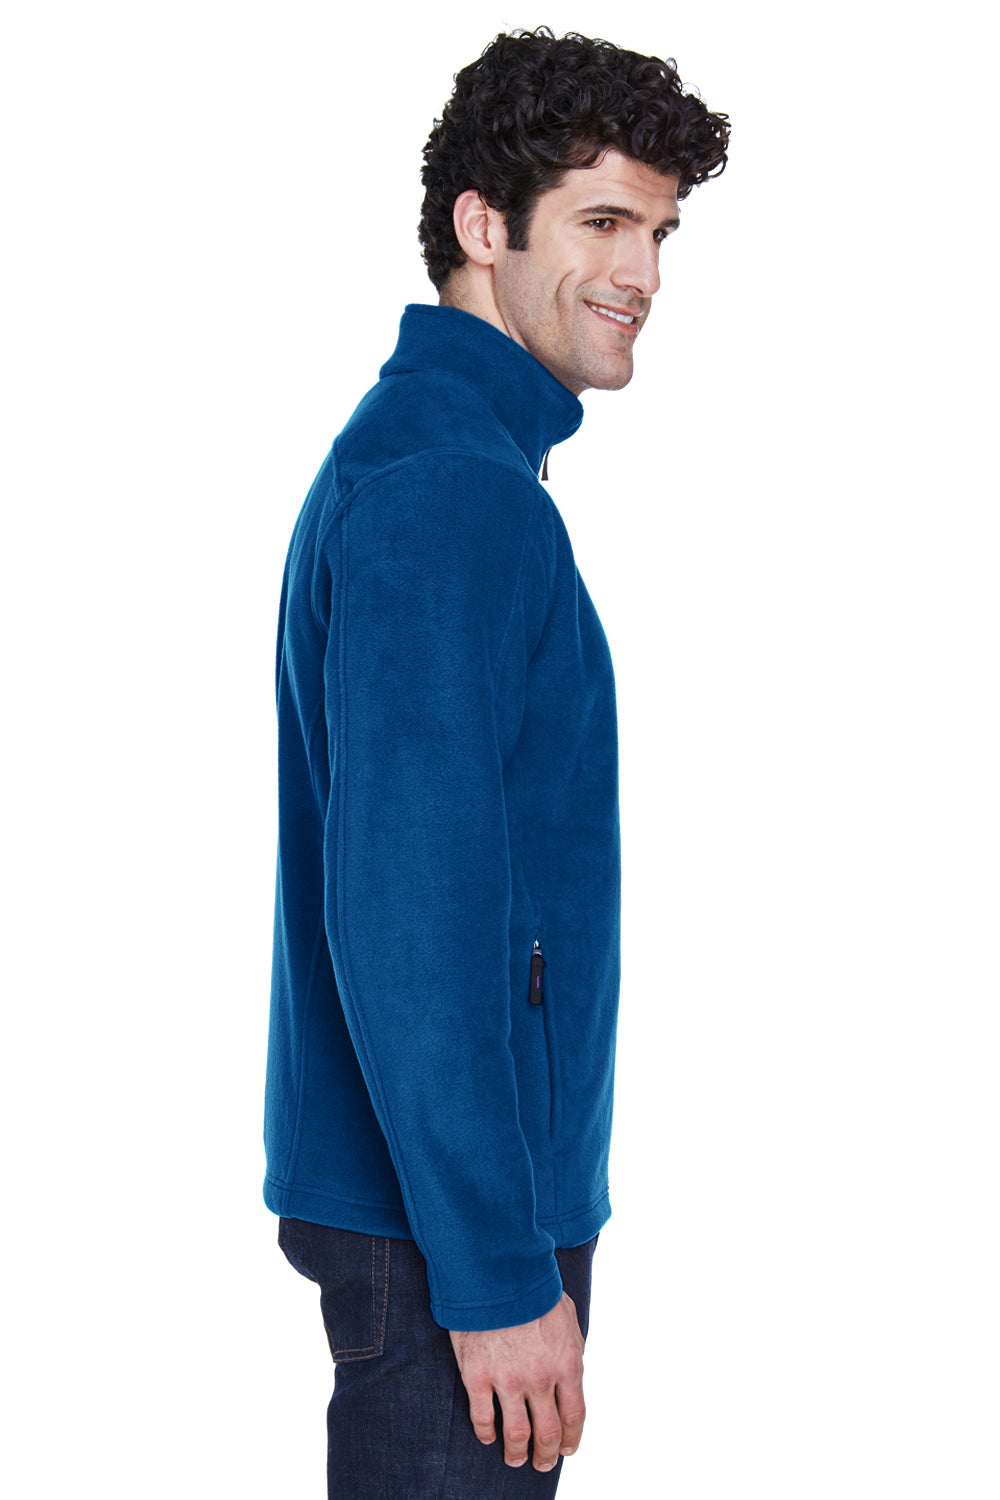 Core 365 88190 Mens Journey Full Zip Fleece Jacket Royal Blue Side